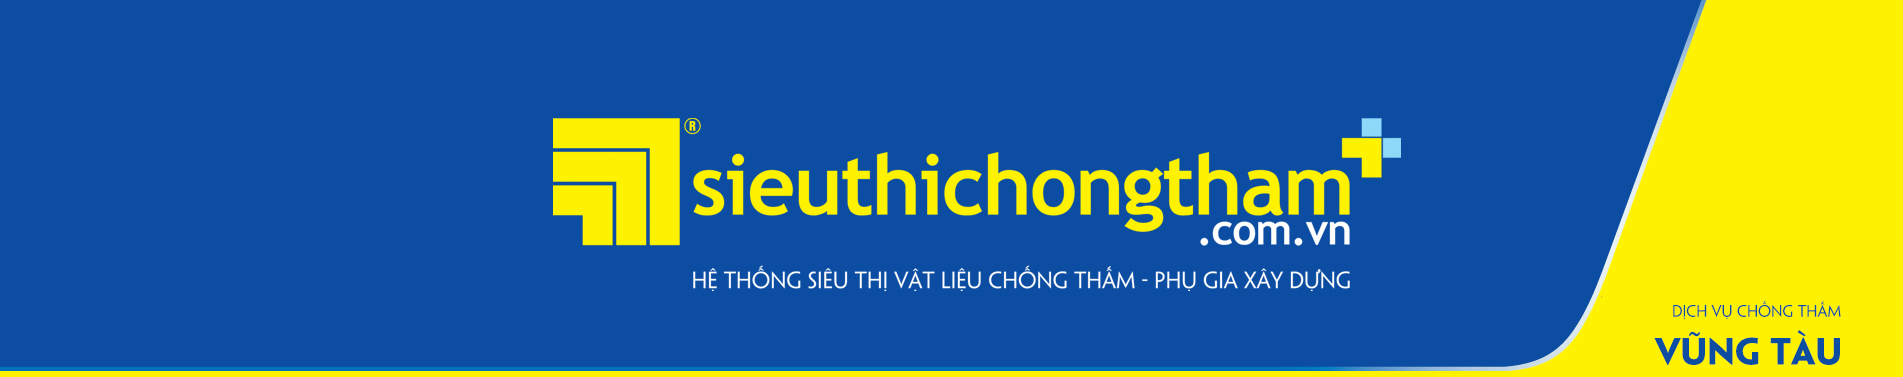 Dich Vu Chong Tham Vung Tau